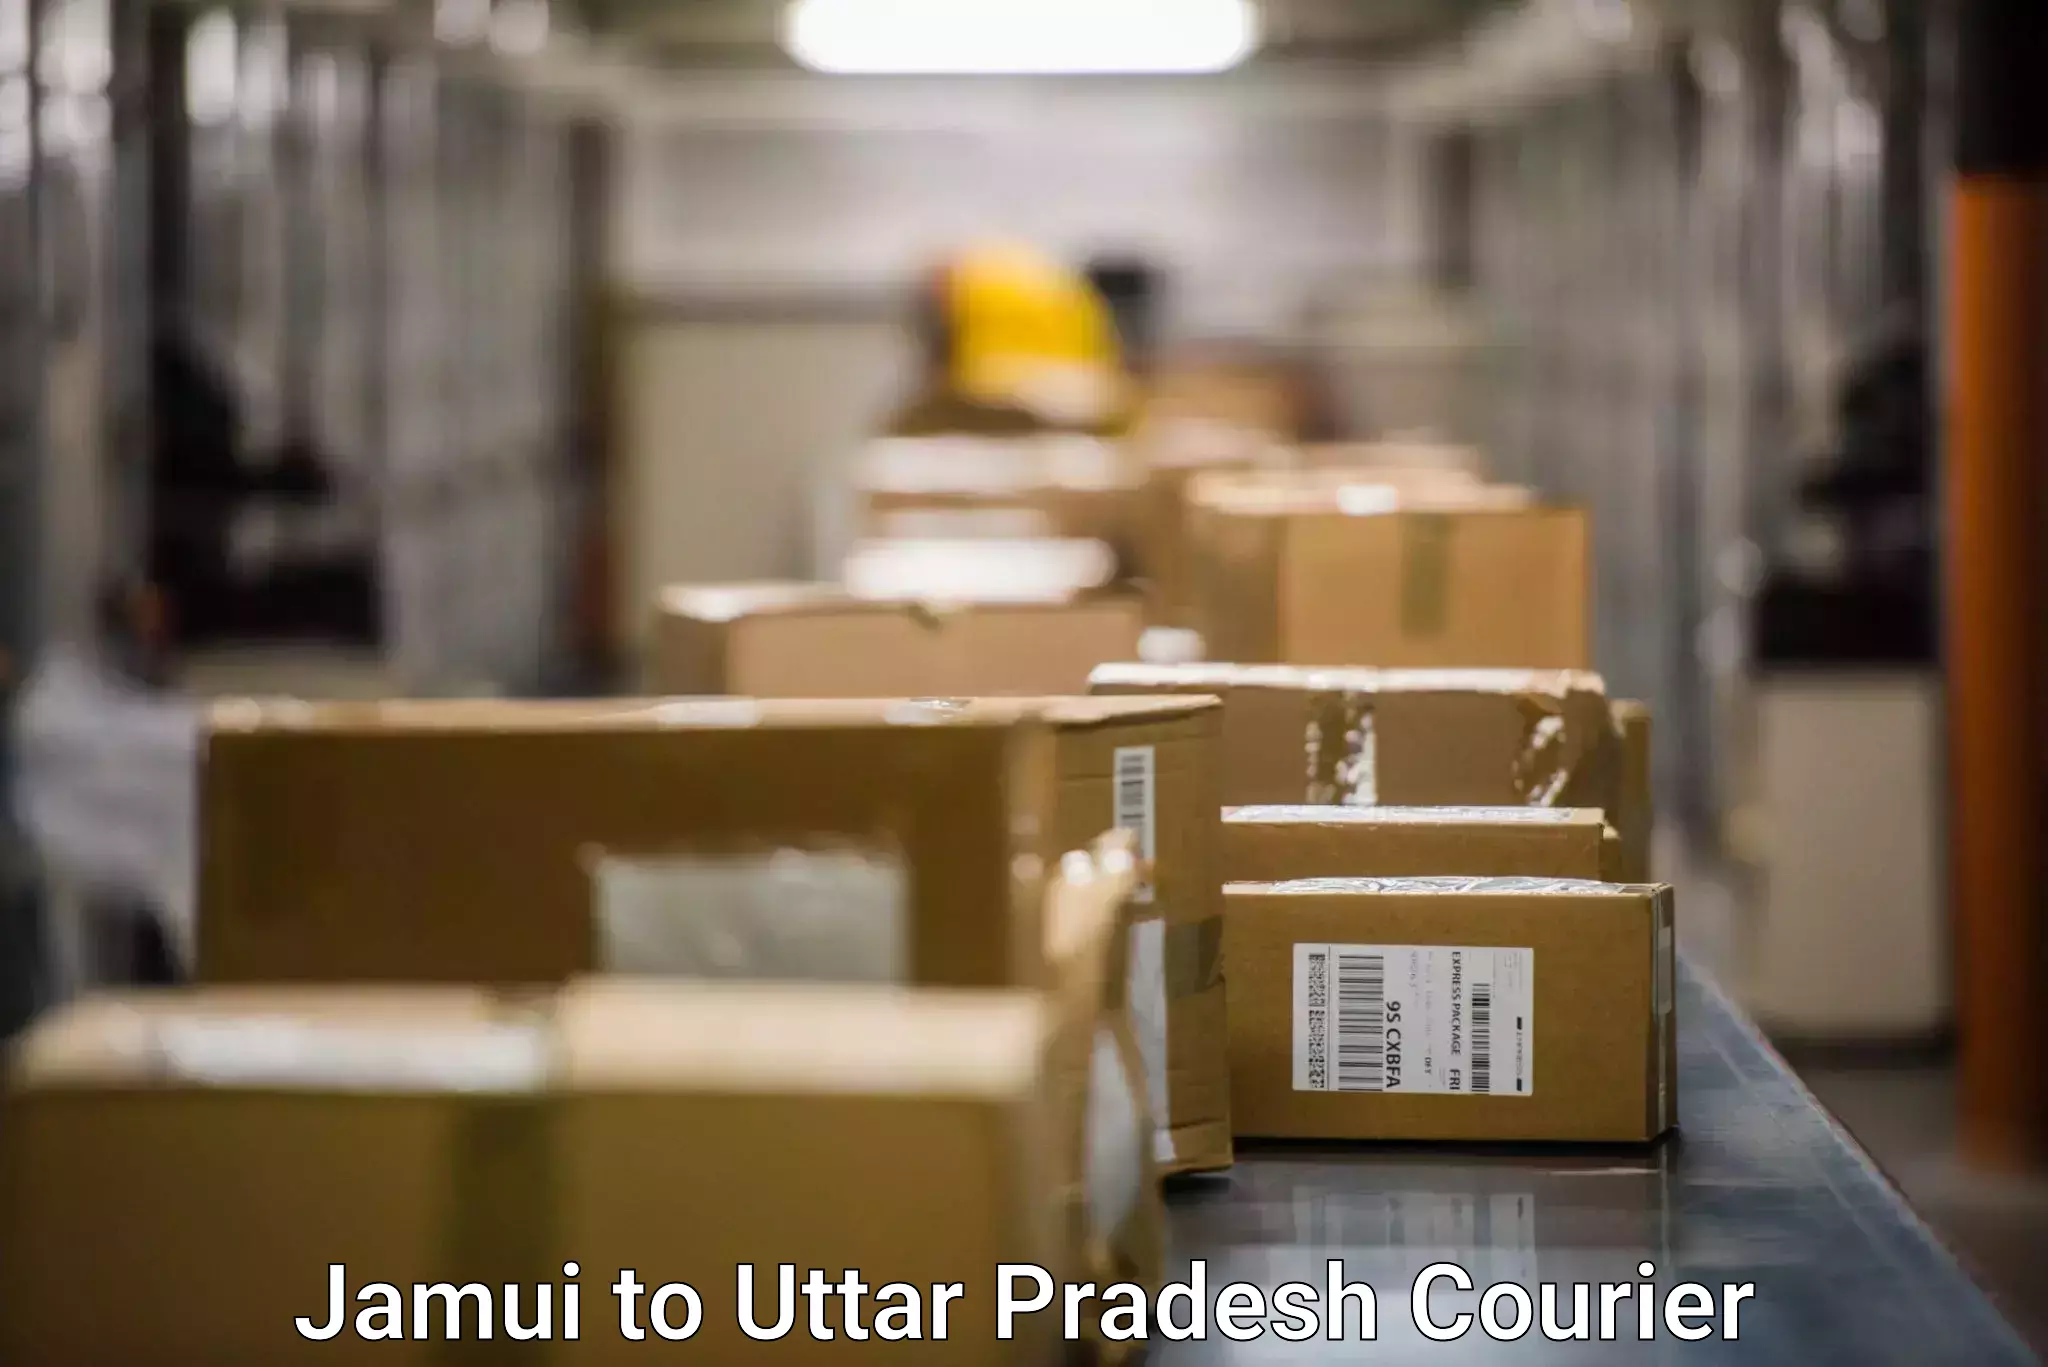 Doorstep delivery service Jamui to Gauri Bazar